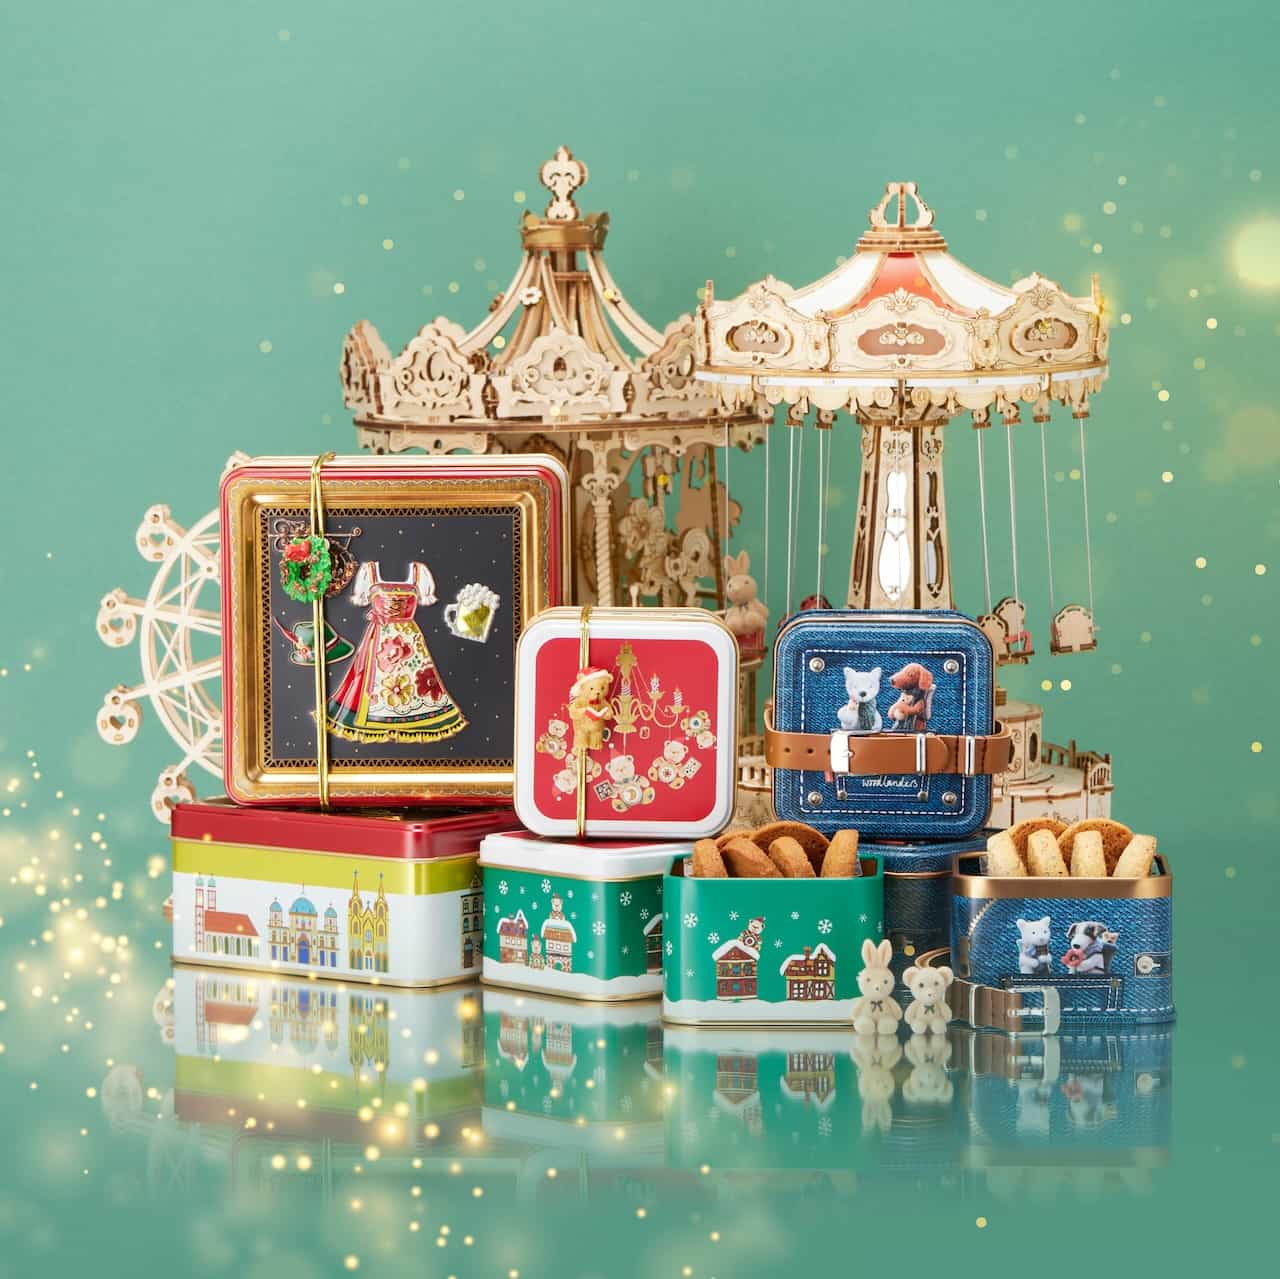 銀座三越・シャンデリアをテーマとして作ったお菓子缶やドイツのクリスマスマーケットをイメージしたドイツ缶など